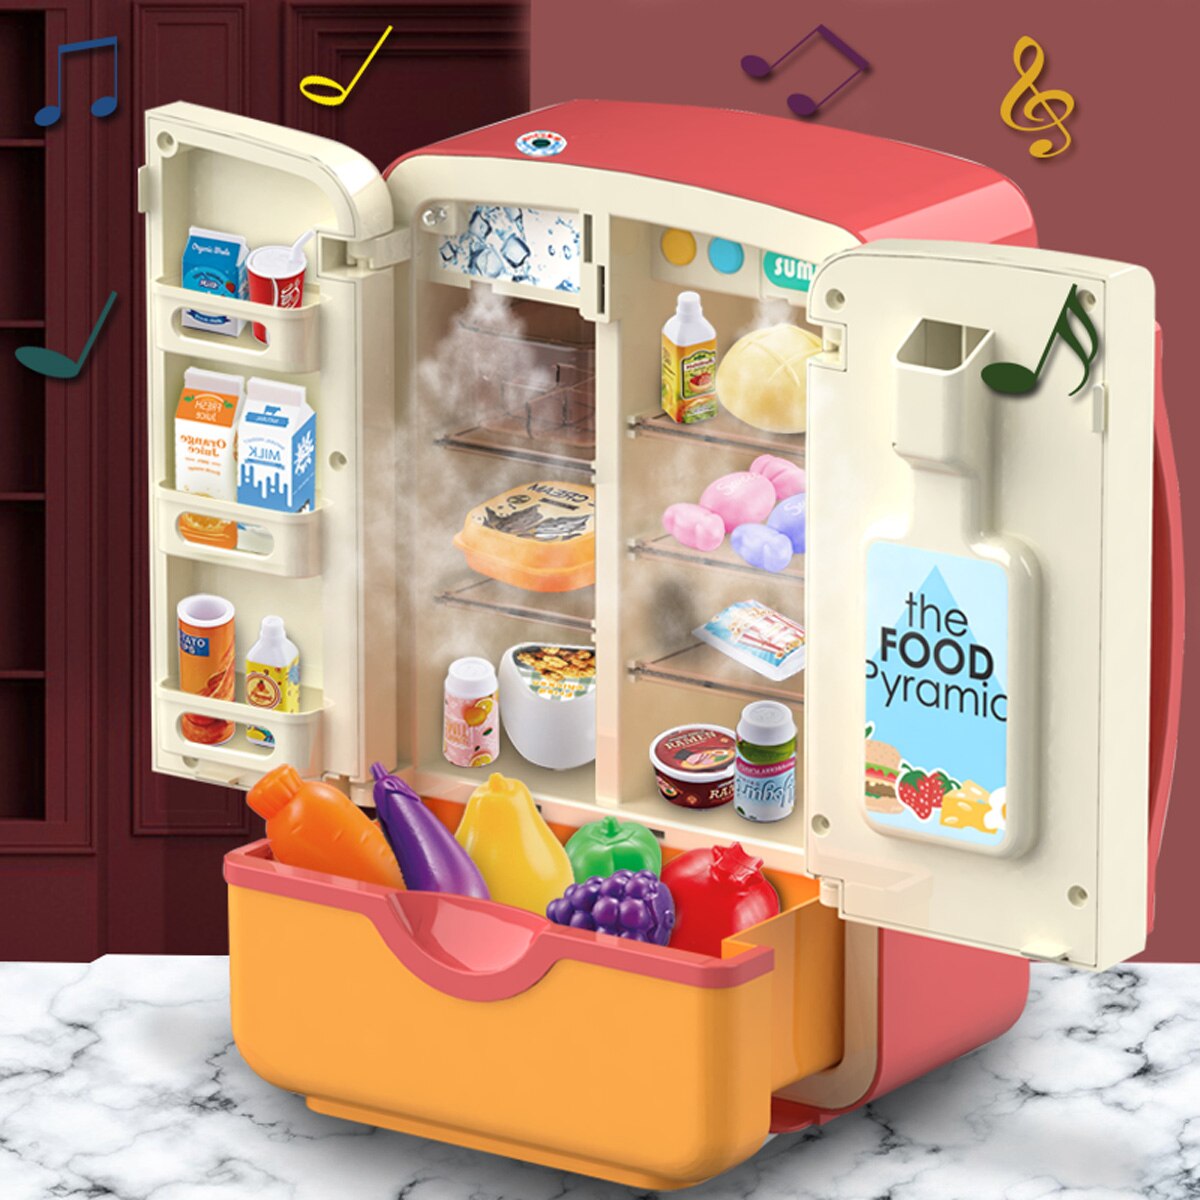 Jouets-de-Simulation-pour-enfants-Double-r-frig-rateur-vaporisateur-Mini-cuisine-jeu-de-r-le